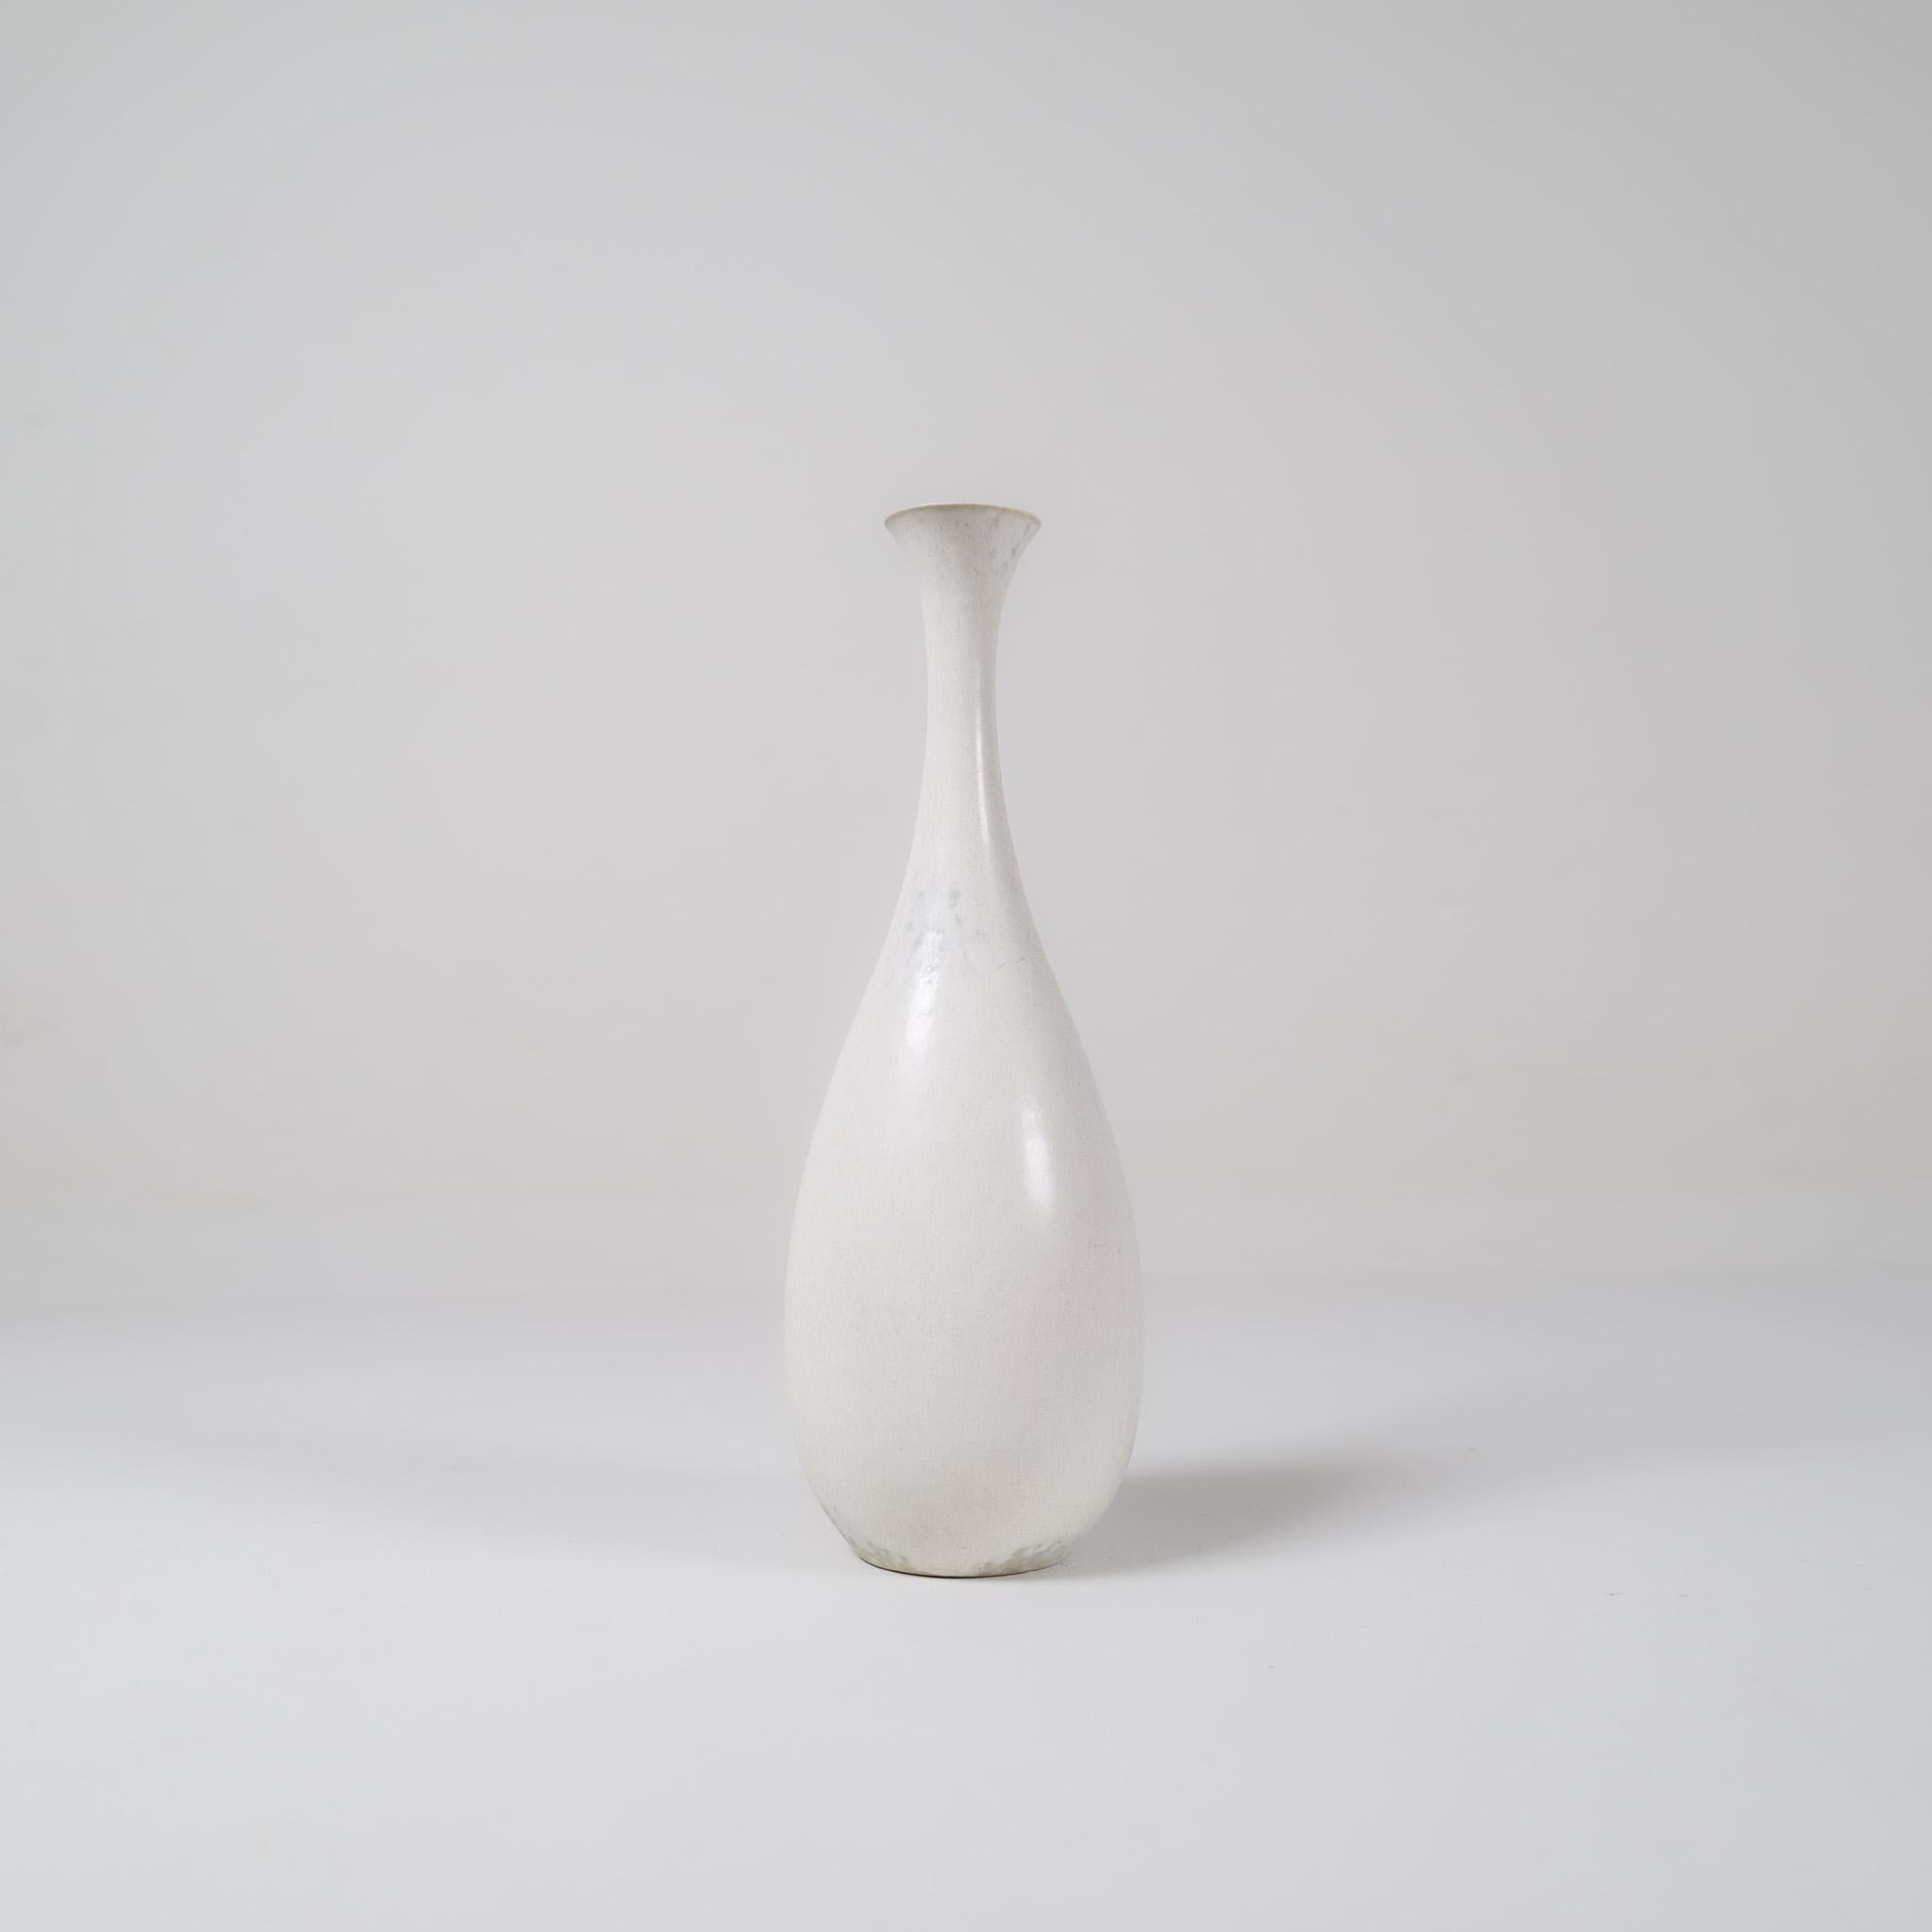 Ce vase exceptionnel est l'œuvre de Rörstrand et du fabricant/designer Carl Harry Stålhane. Fabriqué en Suède au milieu du siècle dernier. Sa belle glaçure coquille d'œuf combinée à ses formes incroyables en font une pièce d'exception. 

Très bon